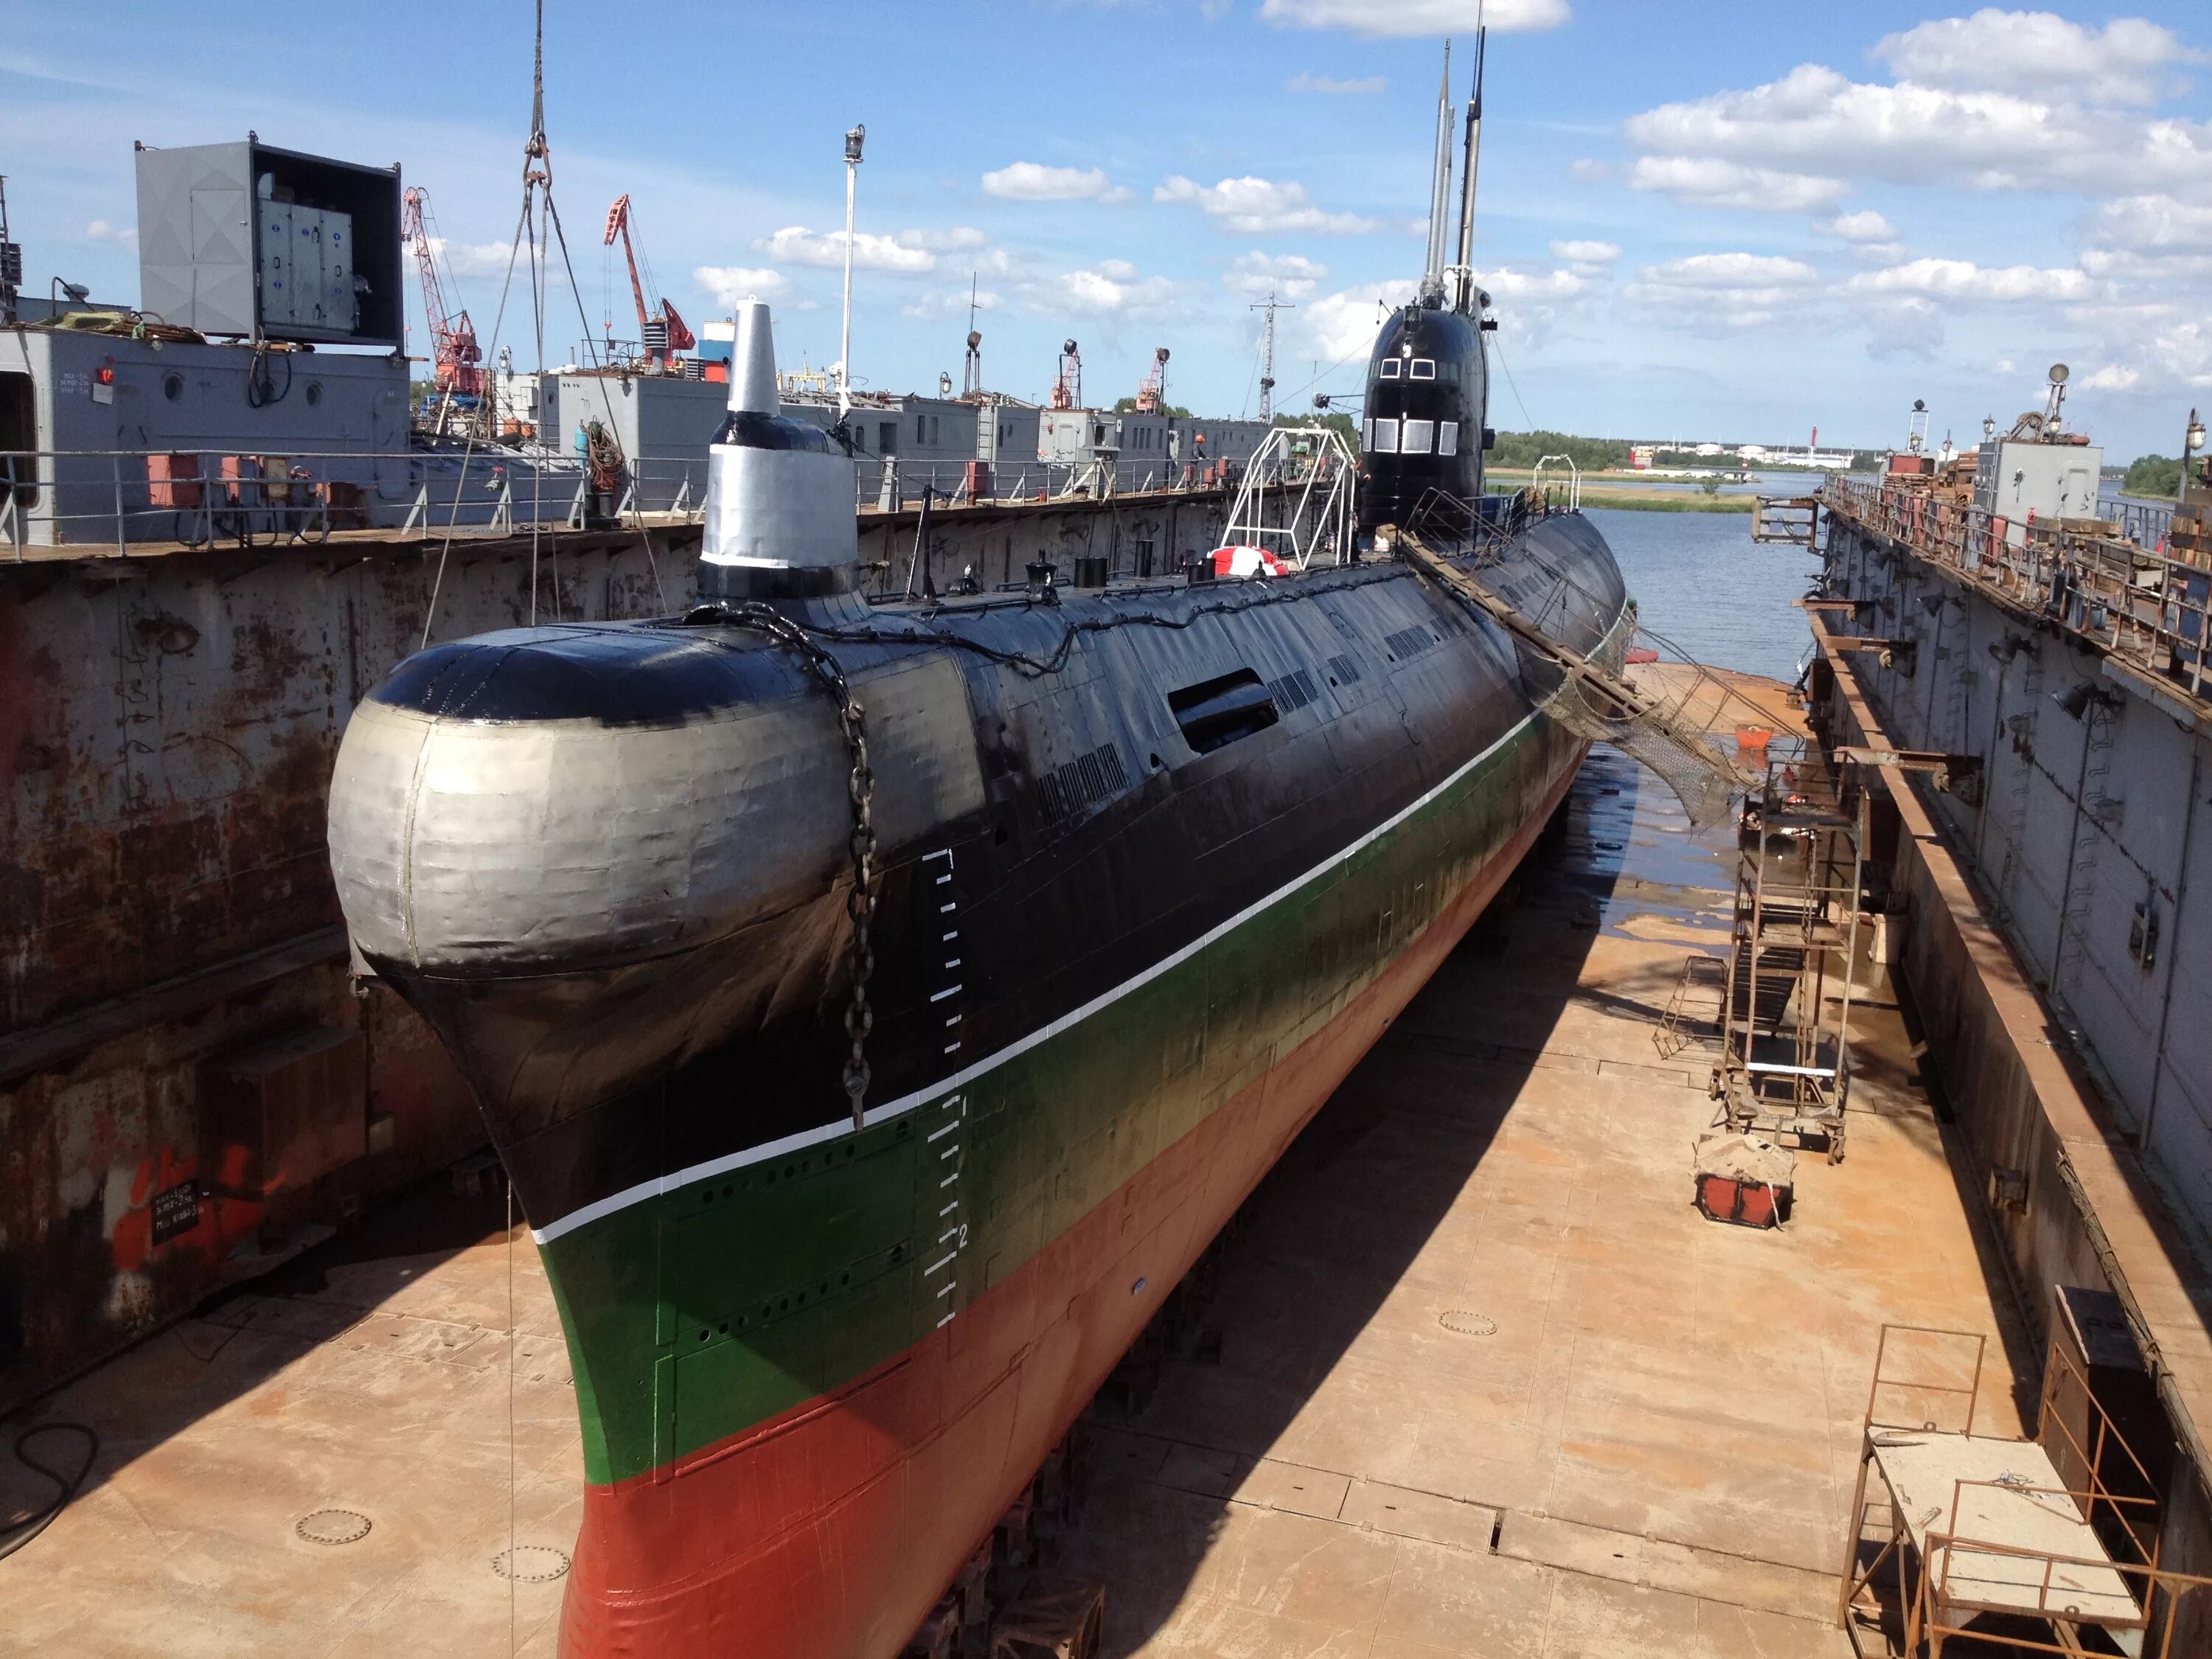 641б подводная лодка. Подводная лодка-музей «б-413». Подводная лодка б-413 проекта 641. Подводной лодки проекта 641 в доке. Пл ев